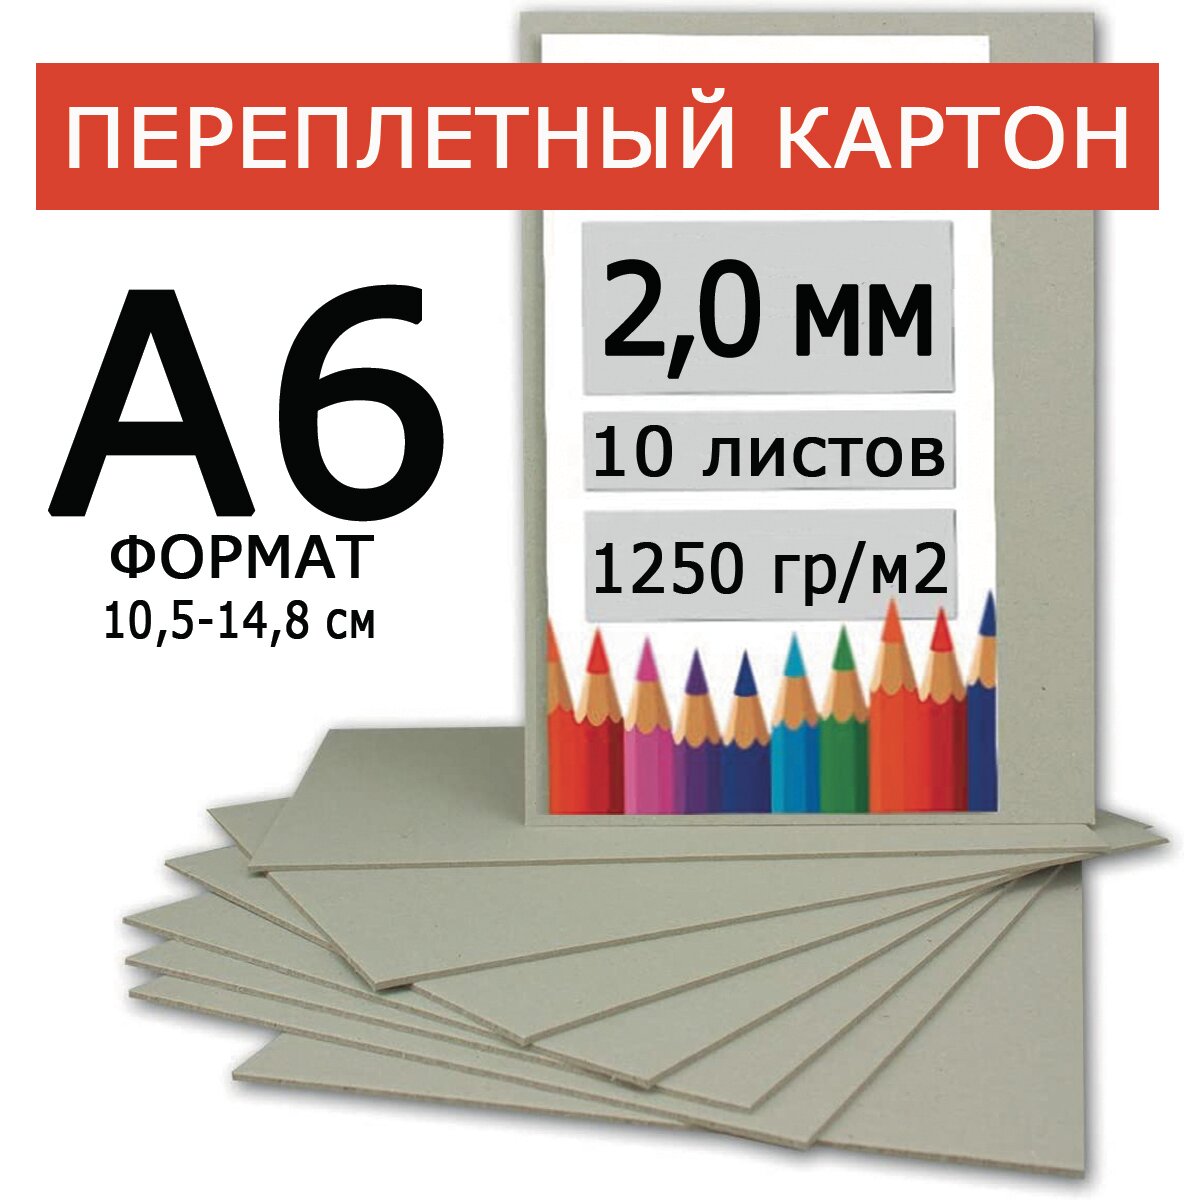 Переплетный картон плотный 2,0 А6 105х148 мм, для скрапбукинга, творчества, рисования и рукоделия, 10 шт.